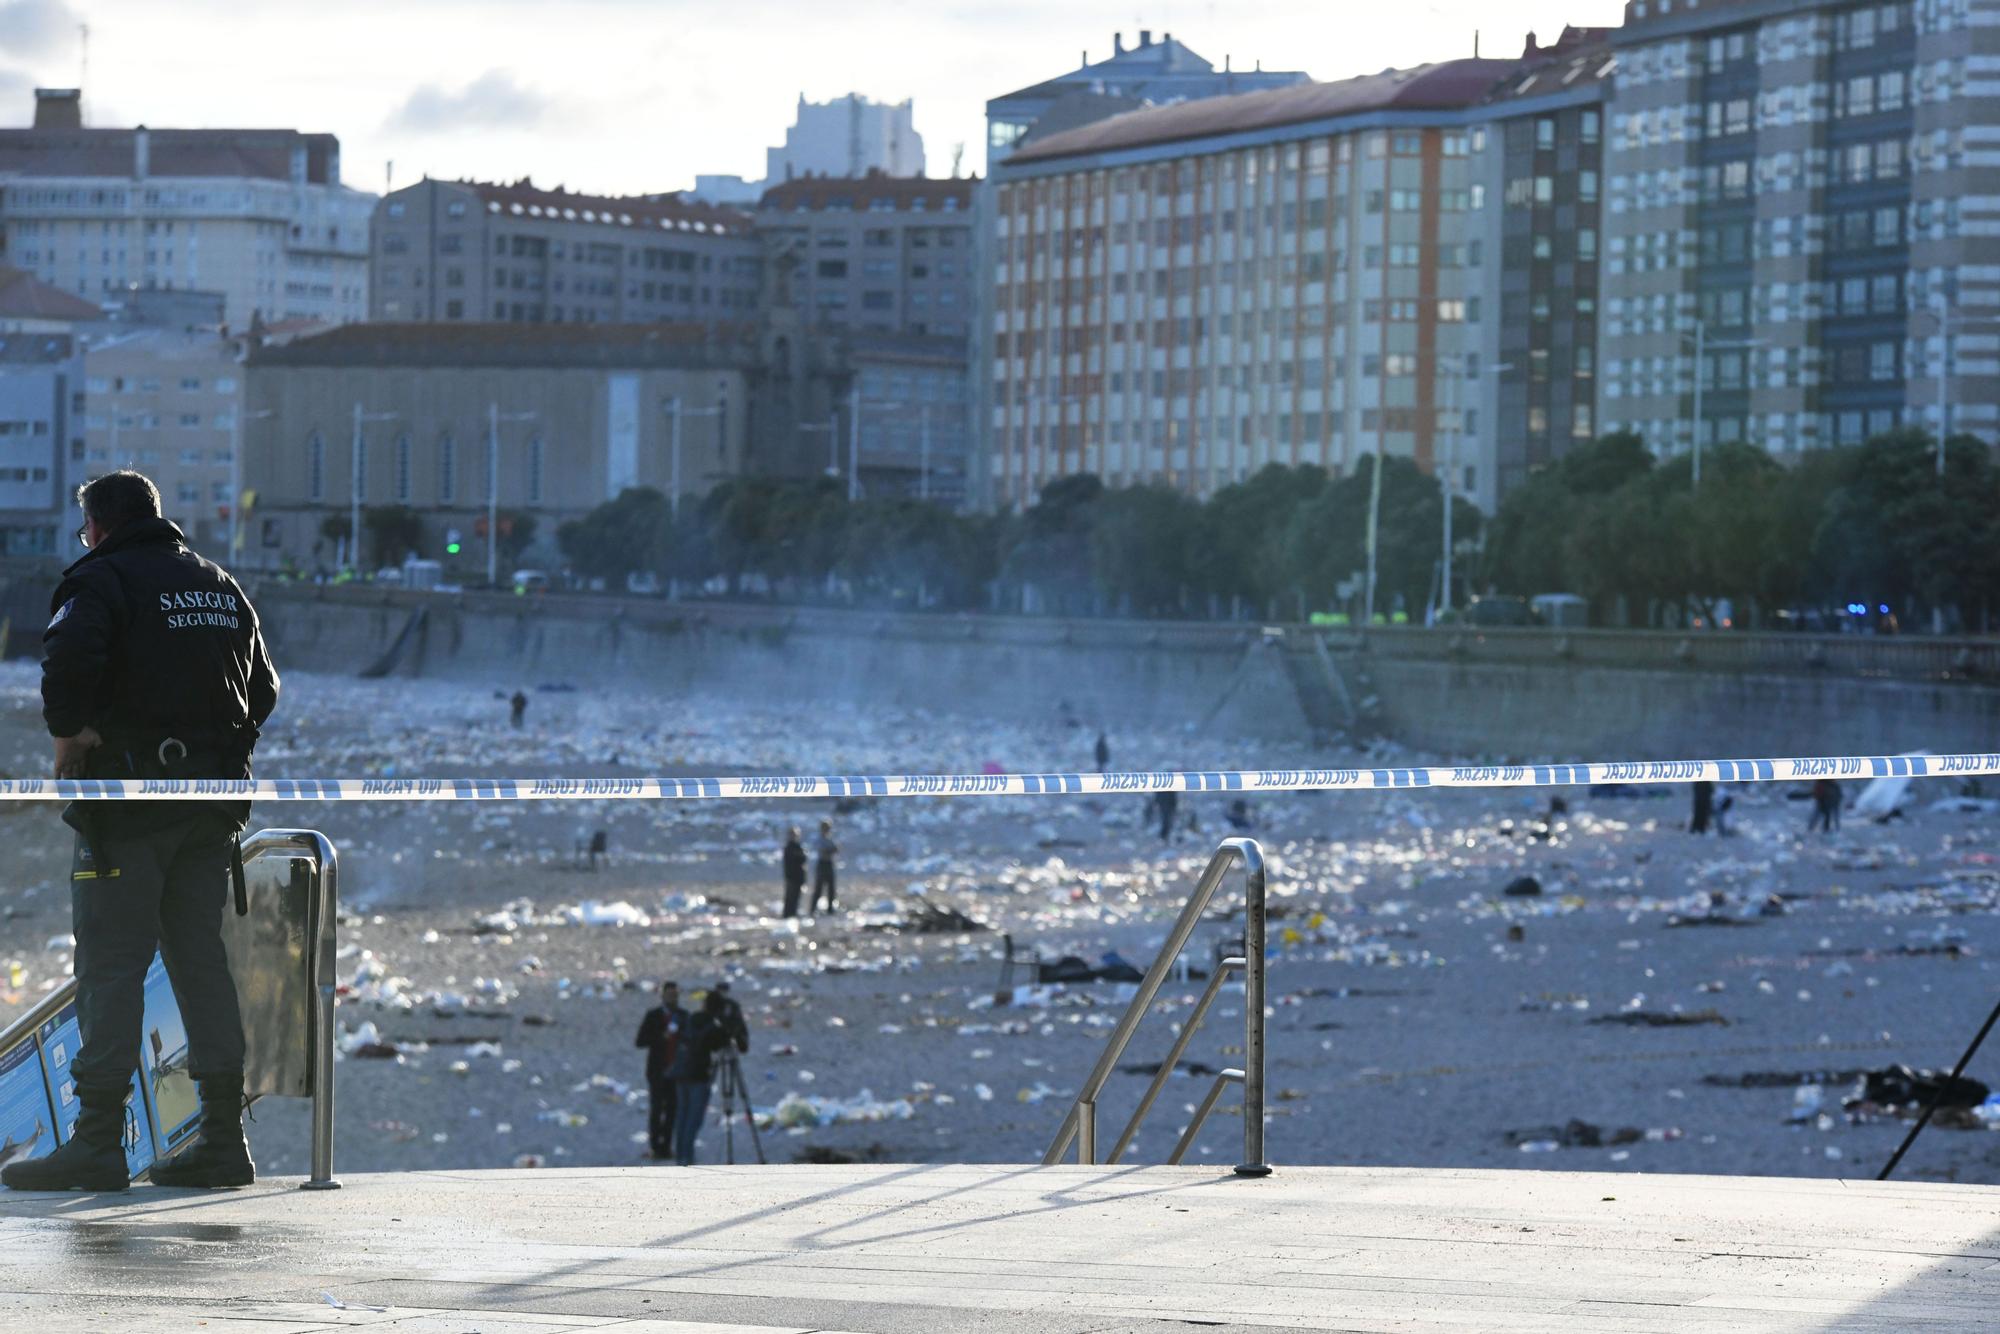 Adiós a la noche de San Juan de A Coruña: la fiesta da paso a los operarios de limpieza